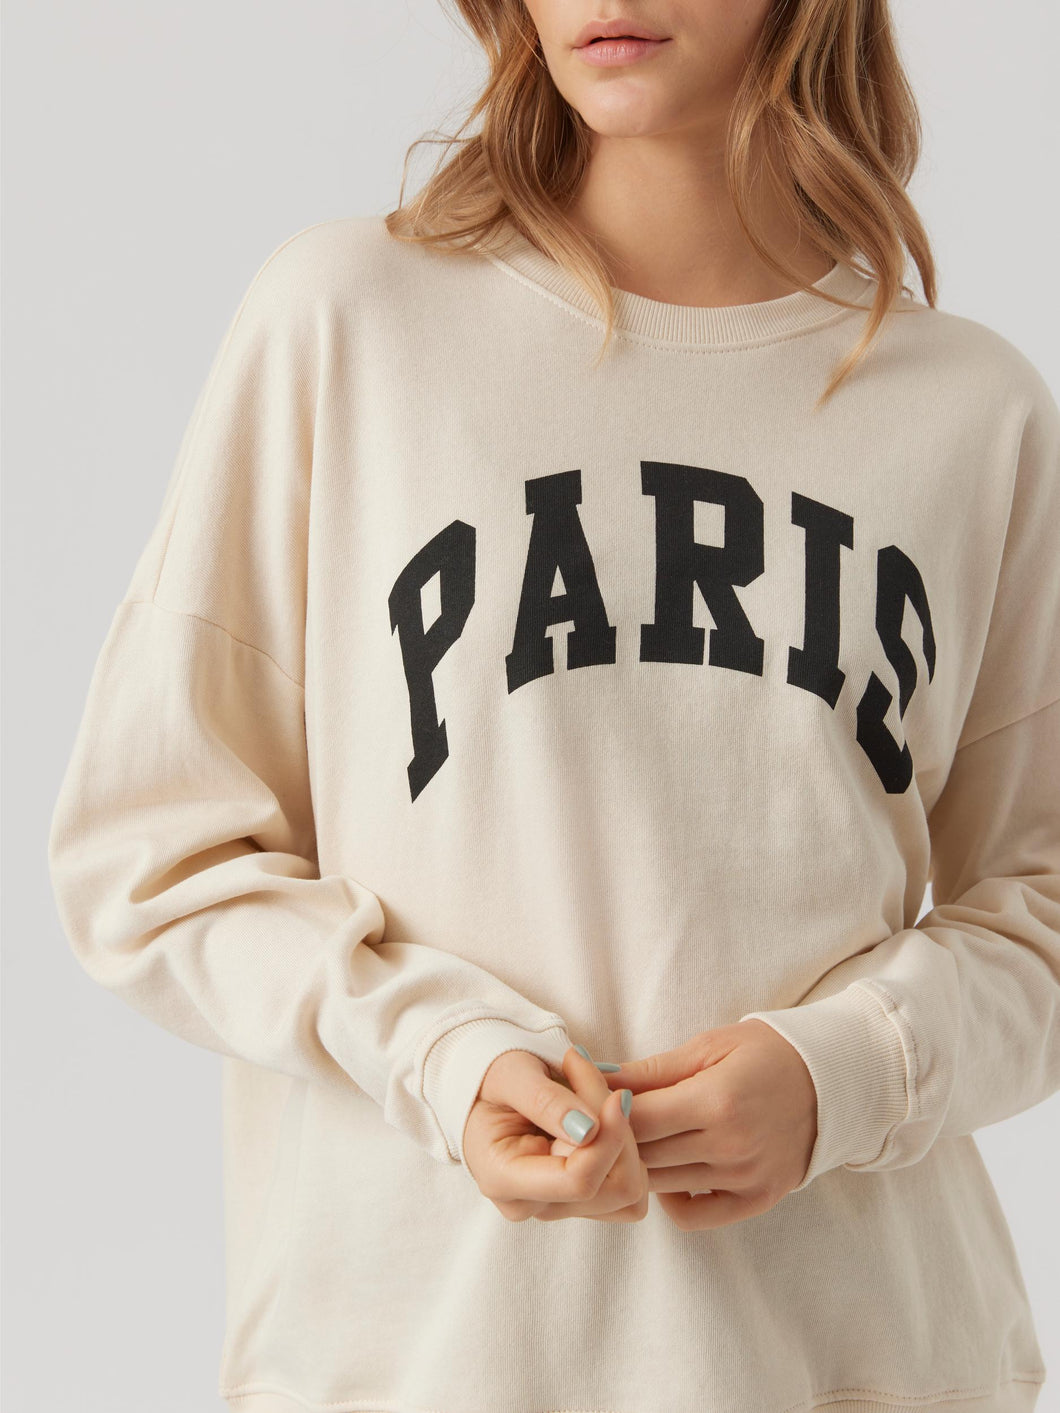 Vero Moda Paris Sweatshirt